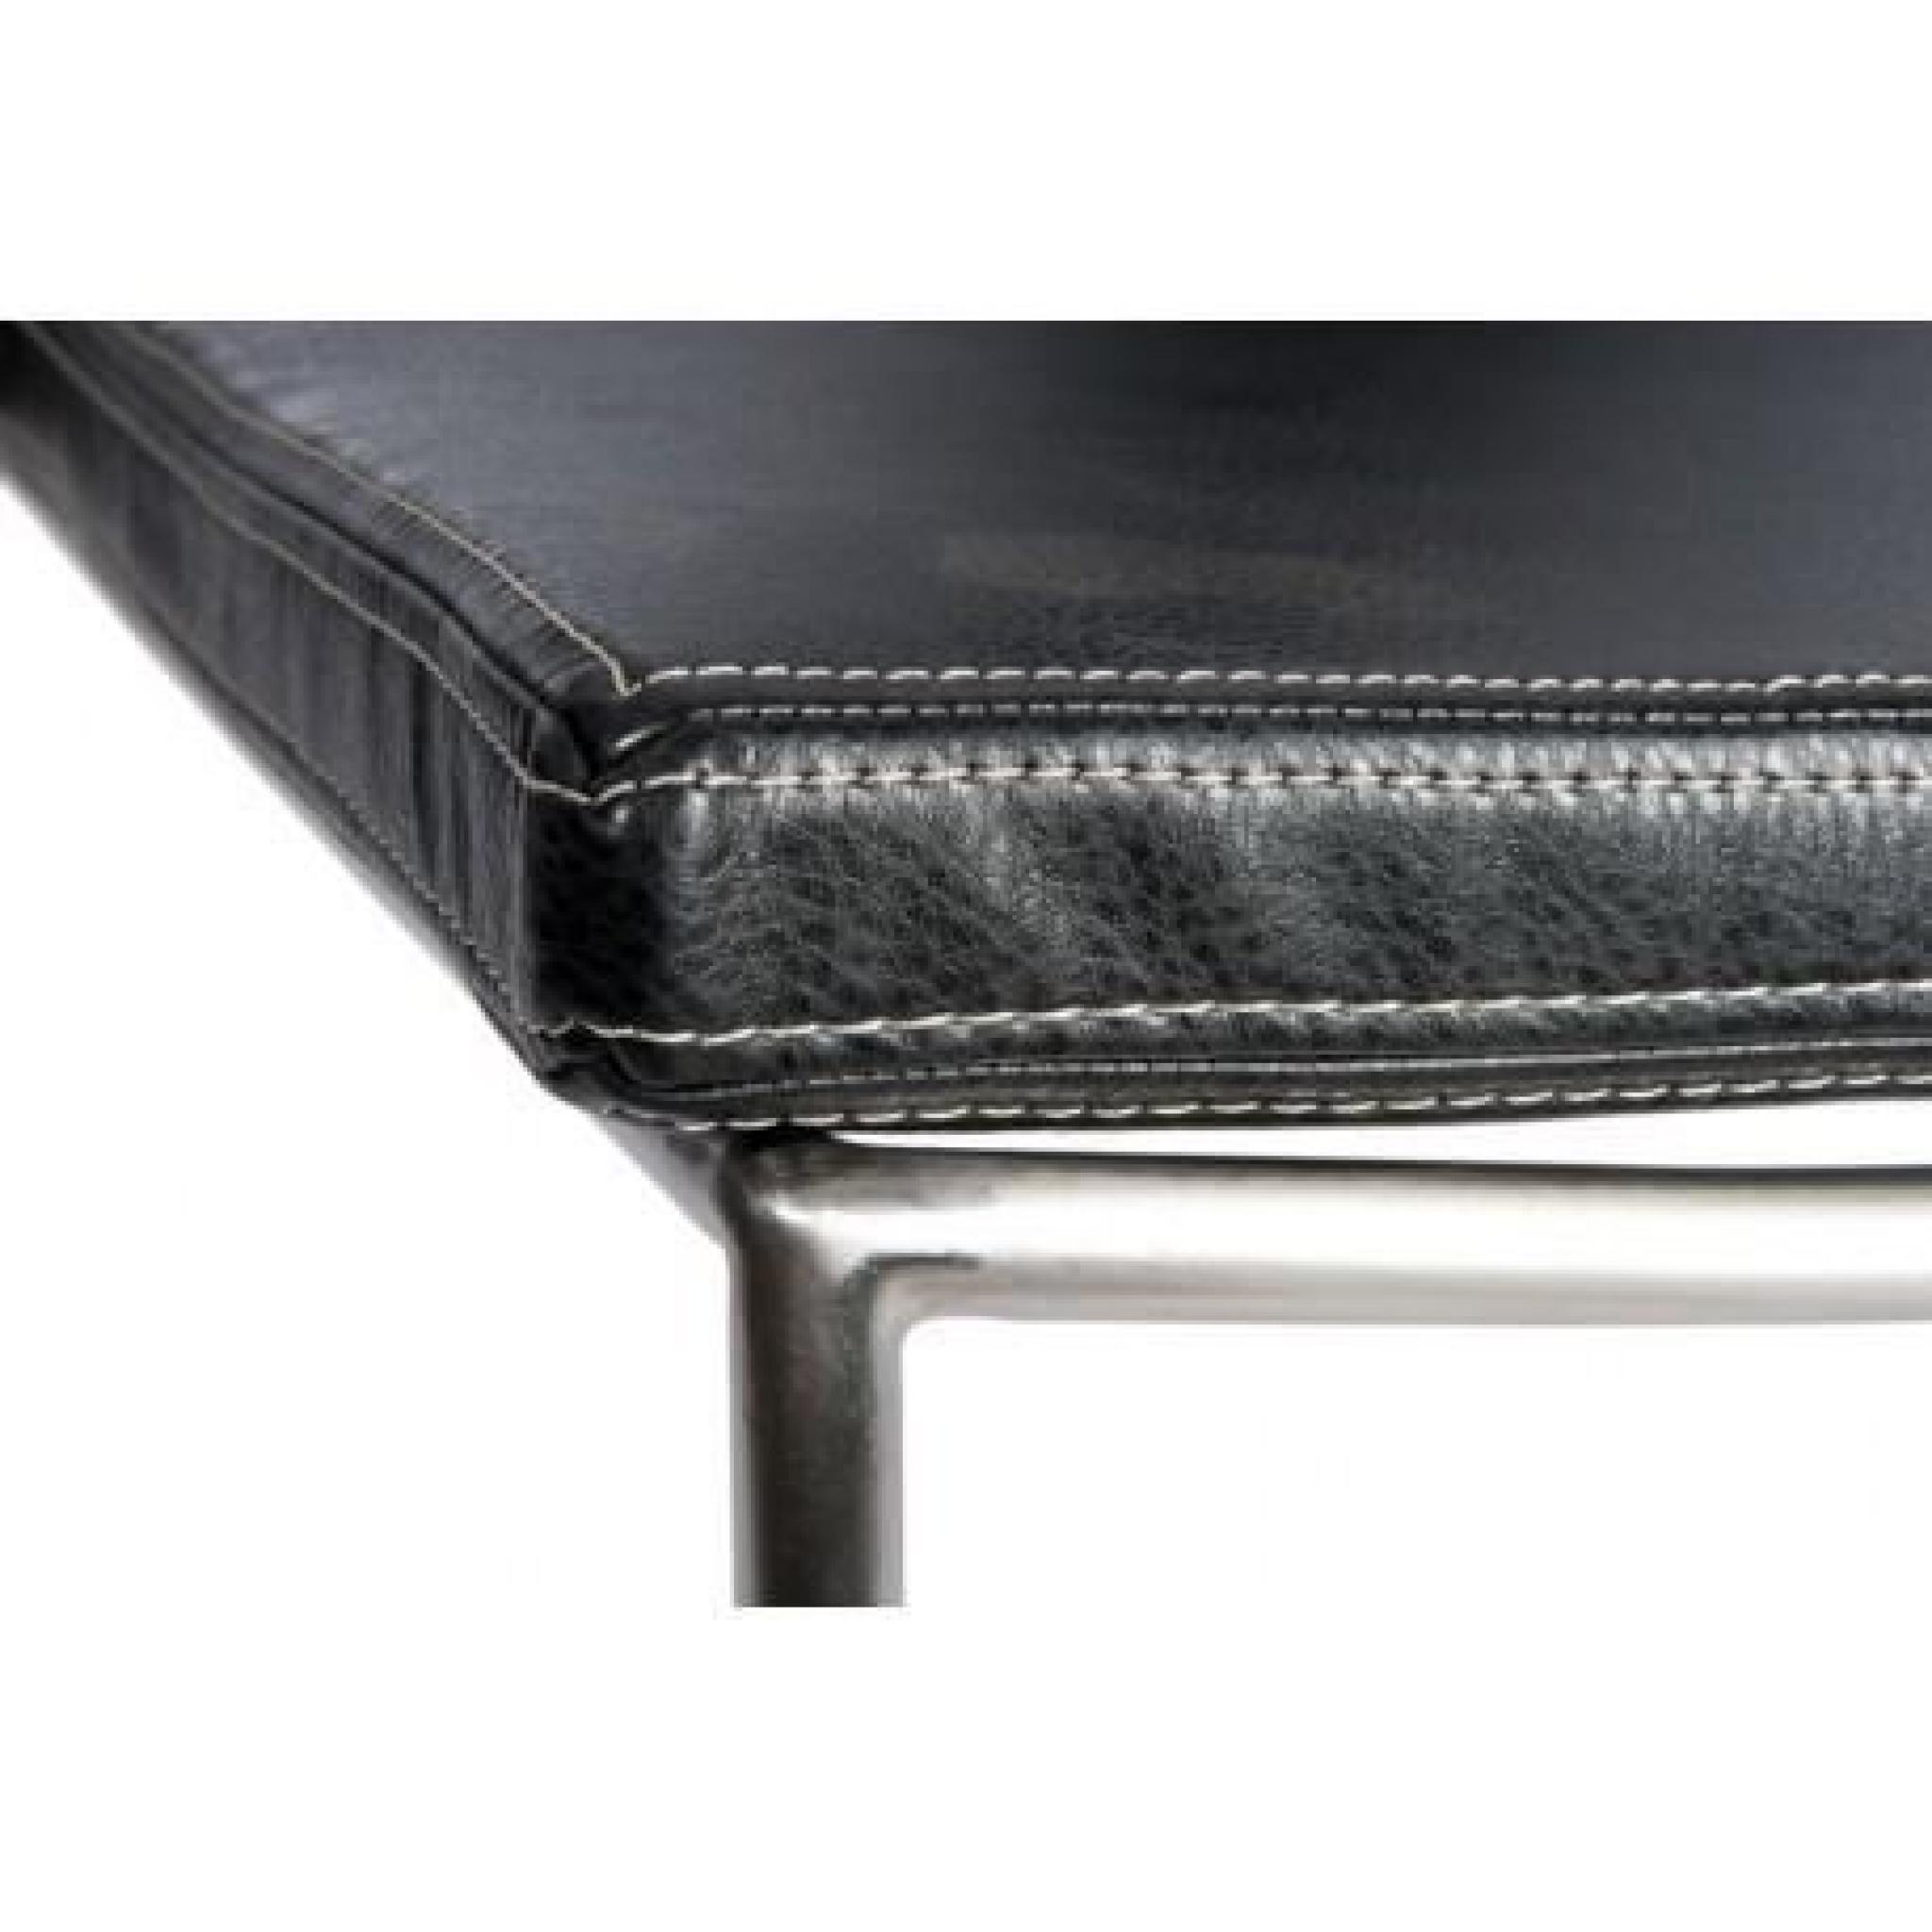 Chaise Moderne Lima En Inox Et Assise Cuir Noir/Argent 64X69X74Cm J-Line pas cher